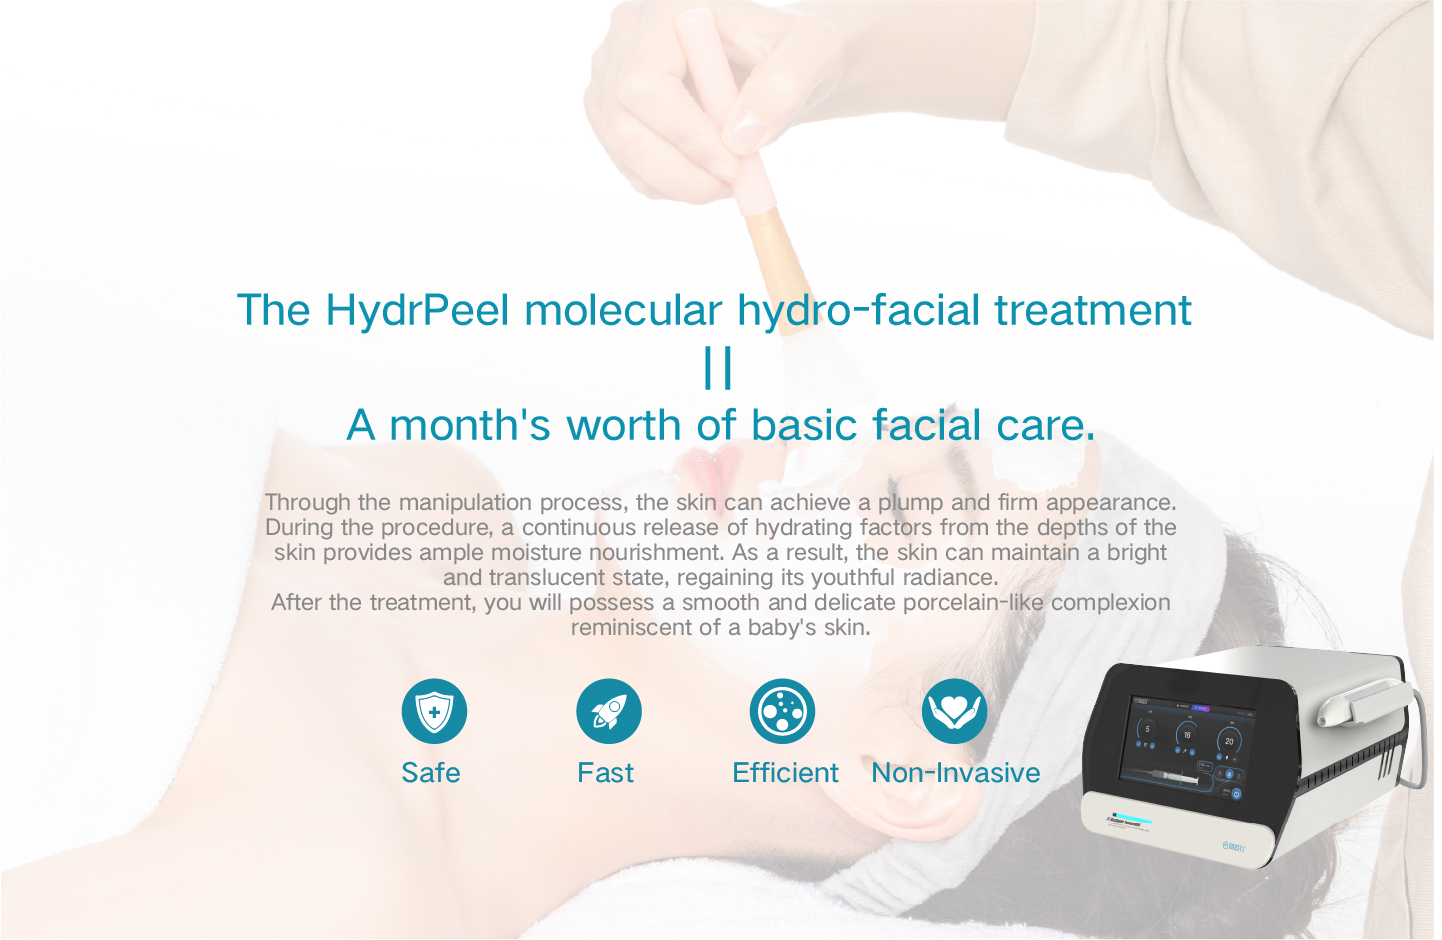 Molekulární hydroobličejové ošetření HydrPeel odpovídá měsíční základní péči o obličej